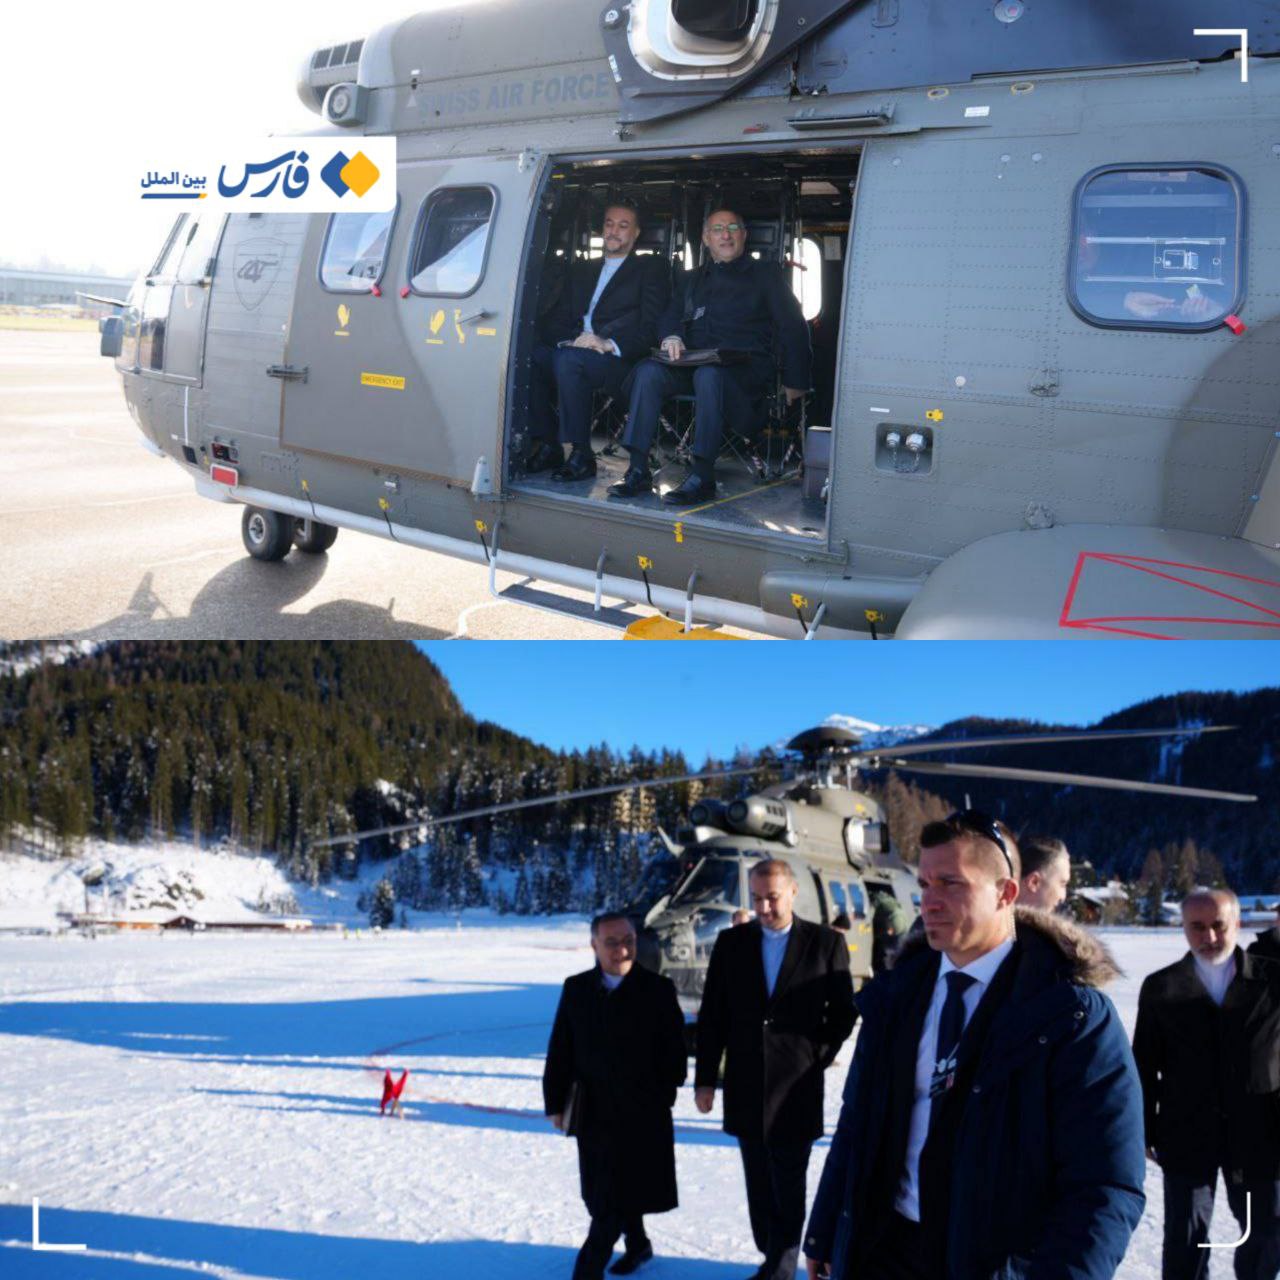 سفر امیرعبداللهیان با هلیکوپتر نیروی هوایی سوئیس به اجلاس داووس! + عکس